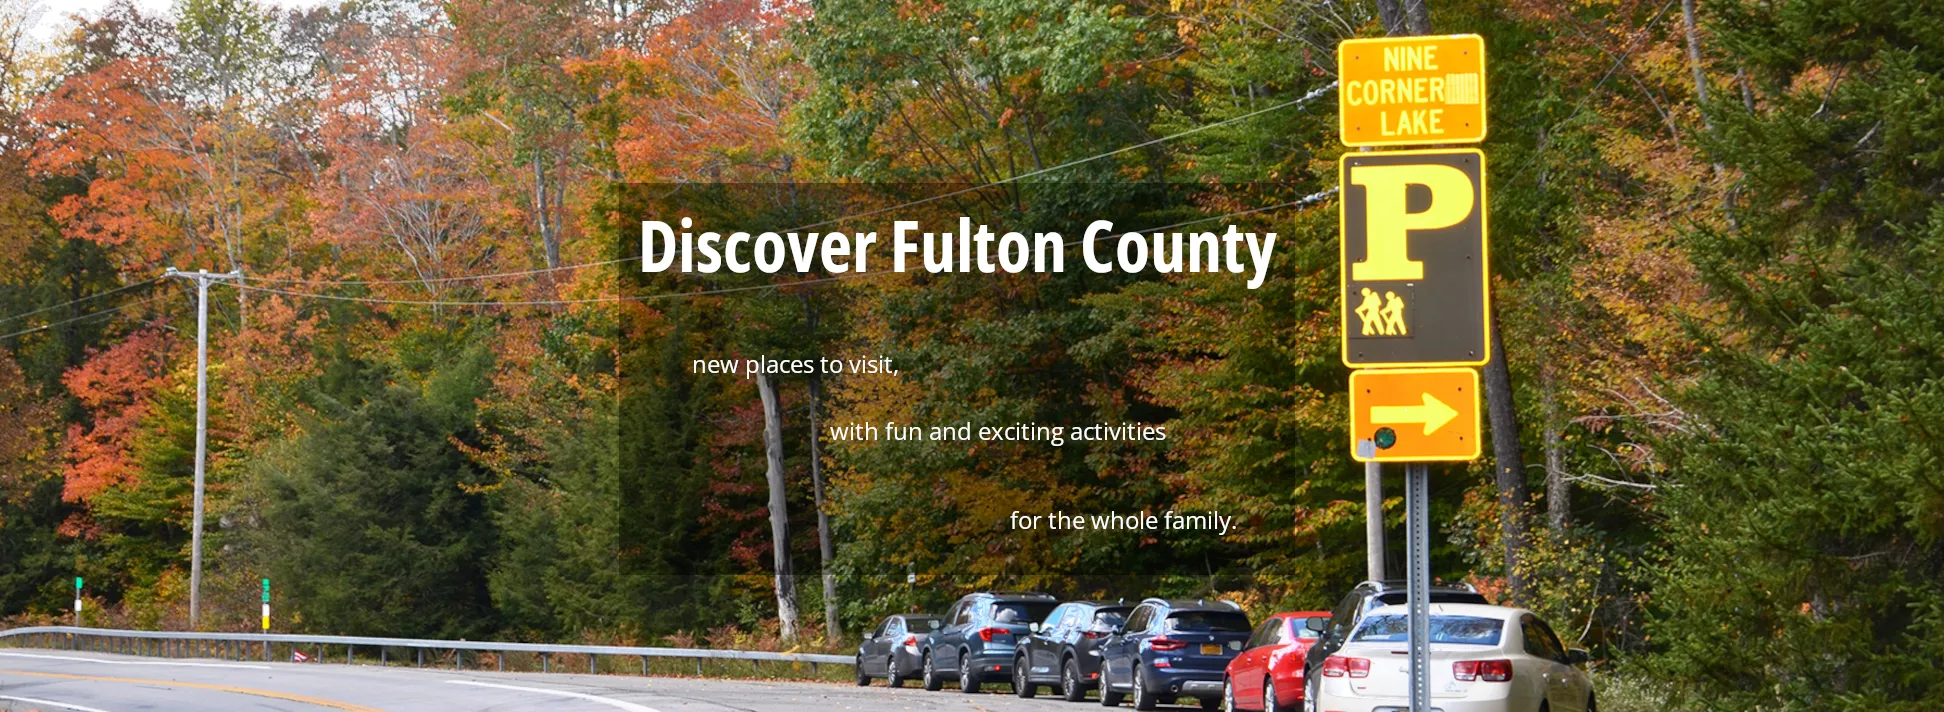 Discover Fulton County, NY